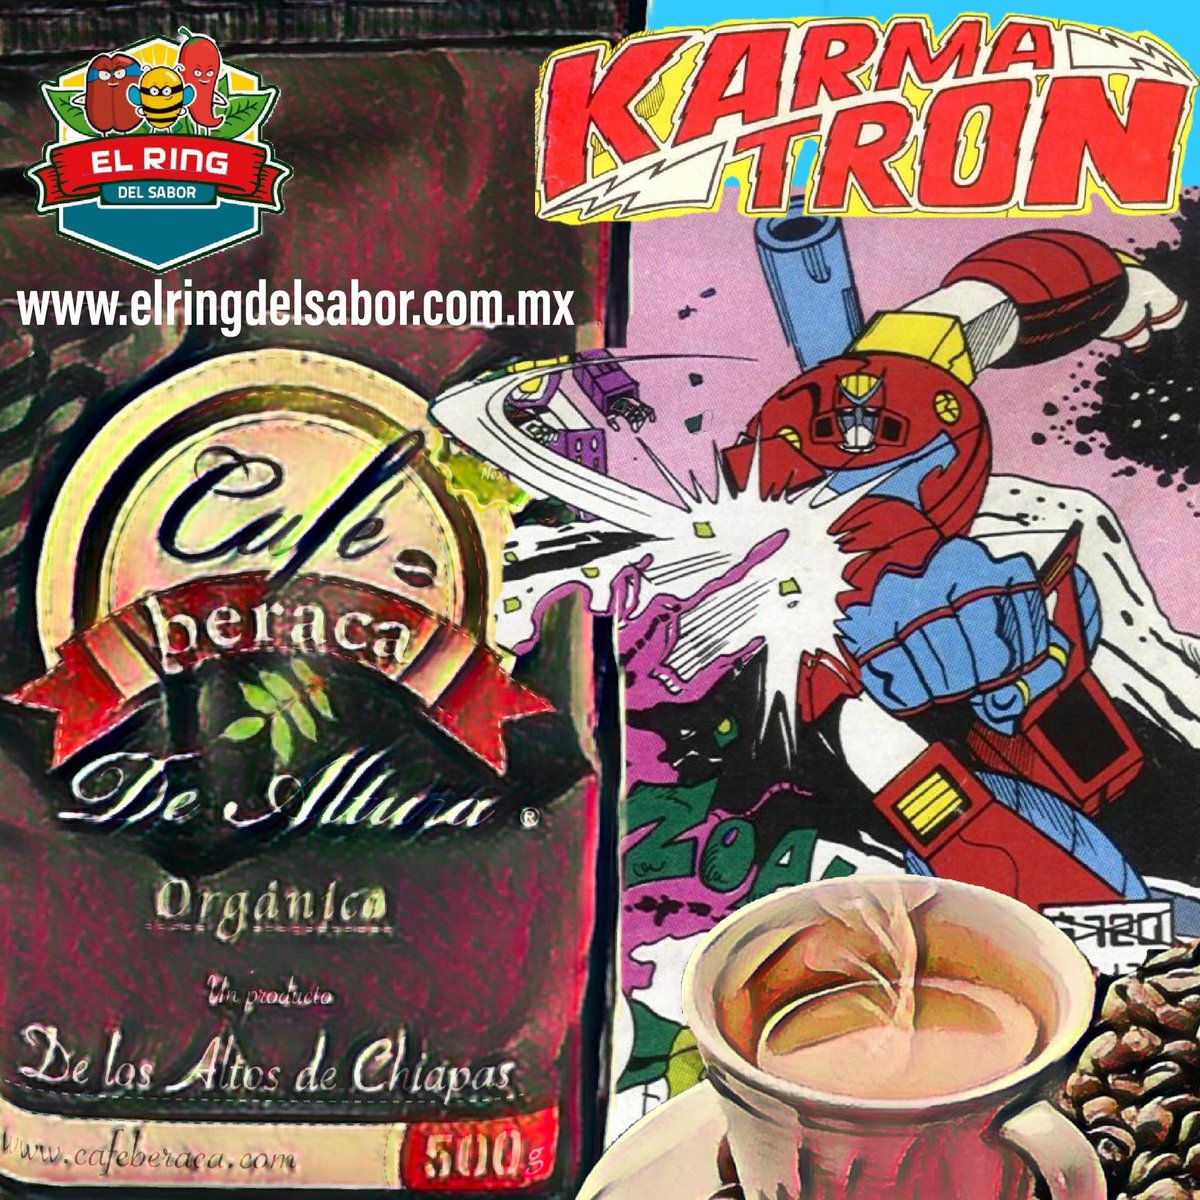 ¡Karmatrón y Los Transformables!
elringdelsabor.com.mx 
#café #coffee #coffeetime #coffeelover #cafemexicano #cafedechiapas #cafeorganico
#natural #sano #cafeberaca #elringdelsabor #homenaje #comic #karmatron #lohechoenmexico #hechoconamor #hechoenmexico #compralocal